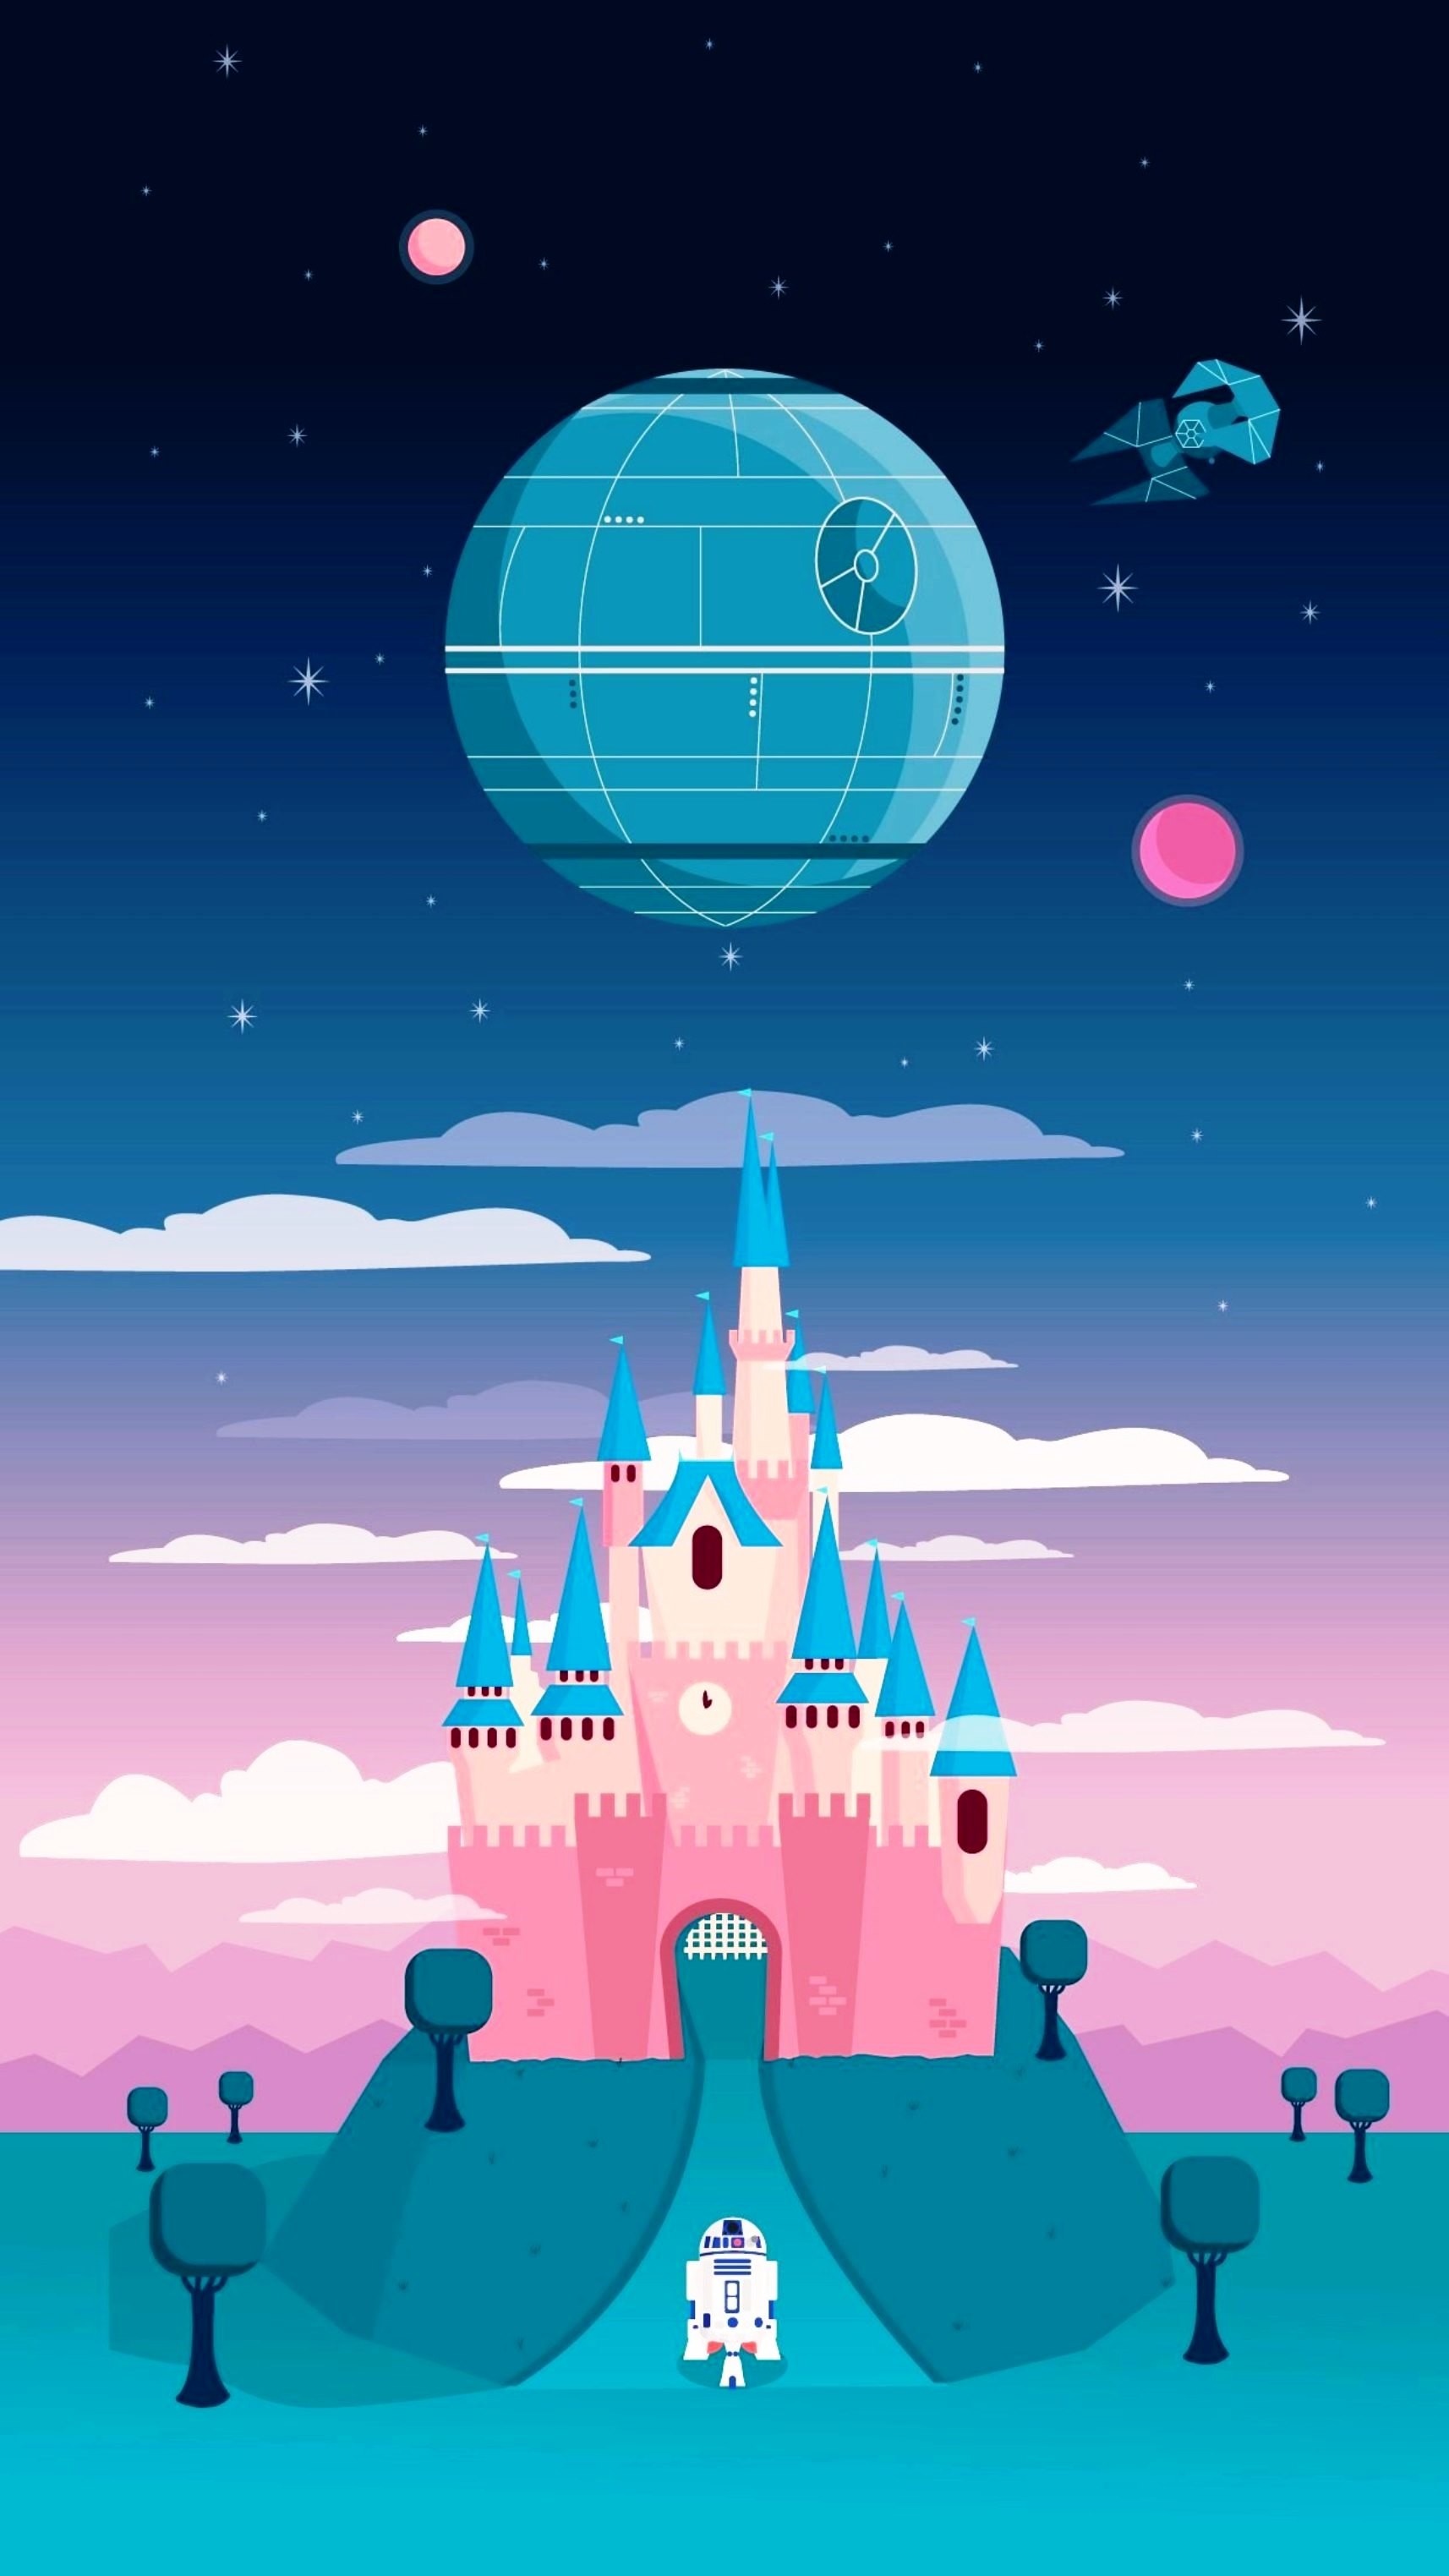 1714x3047 Iphone wallpaper tumblr disney - Cute Disney Wallpapers For Iphone  Wallpapersafari